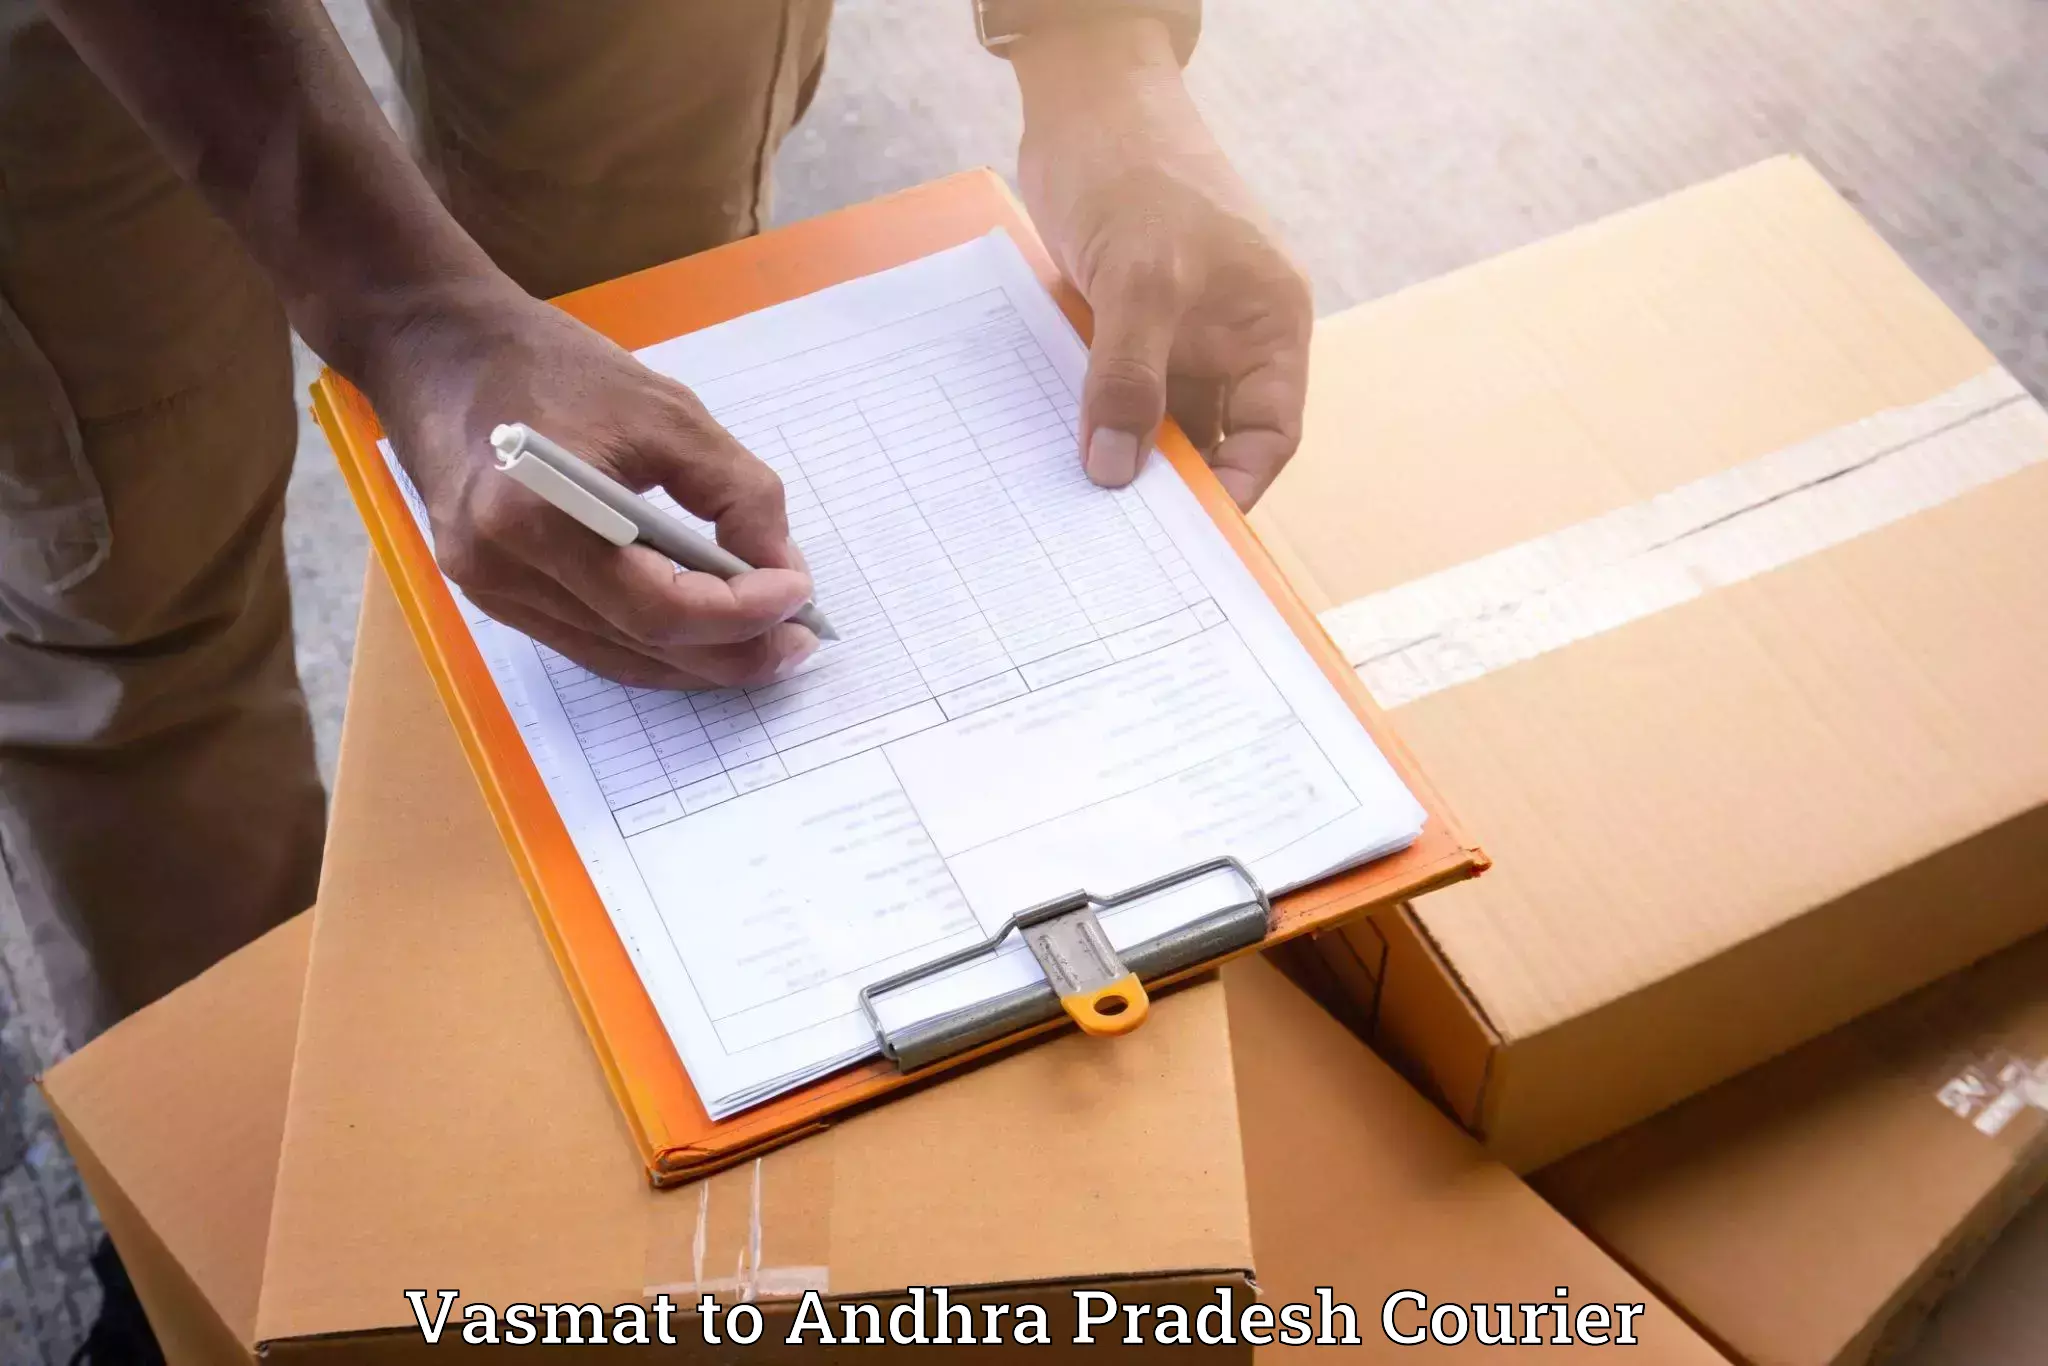 Furniture moving service Vasmat to Andhra Pradesh